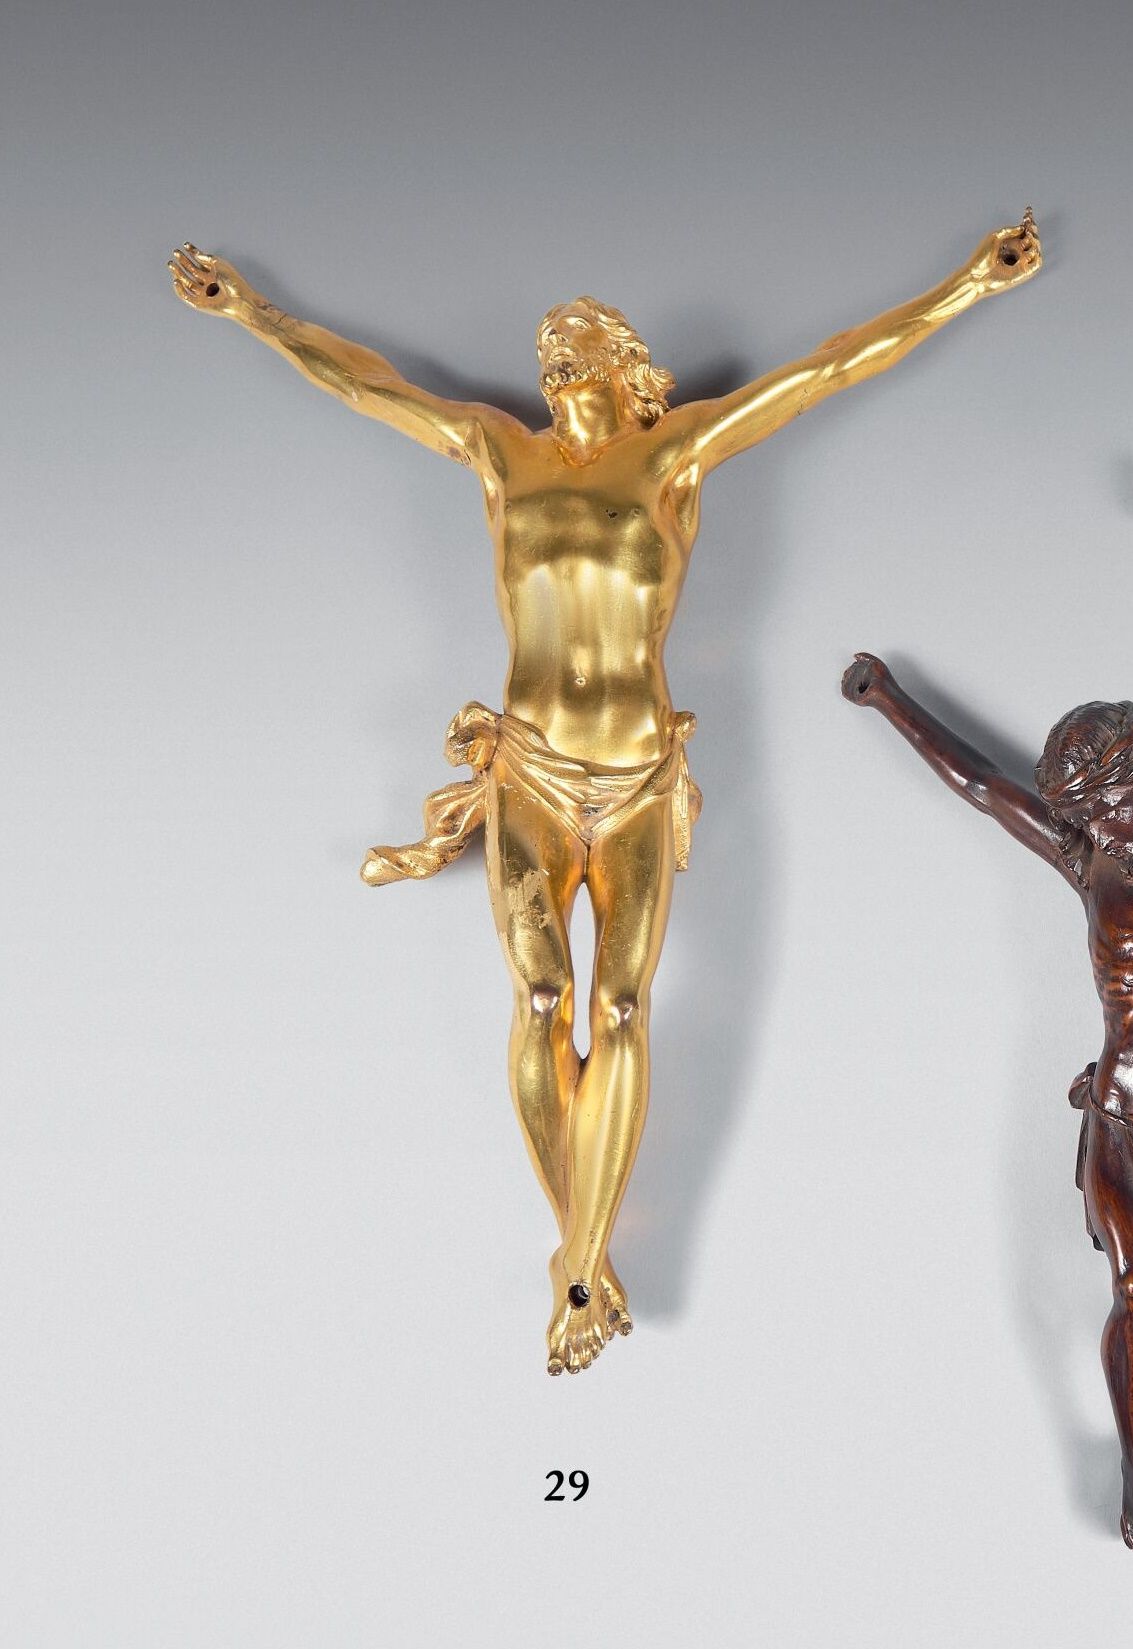 Null Christus aus vergoldeter Bronze mit ziseliertem Perizonium.
Höhe: 25 cm